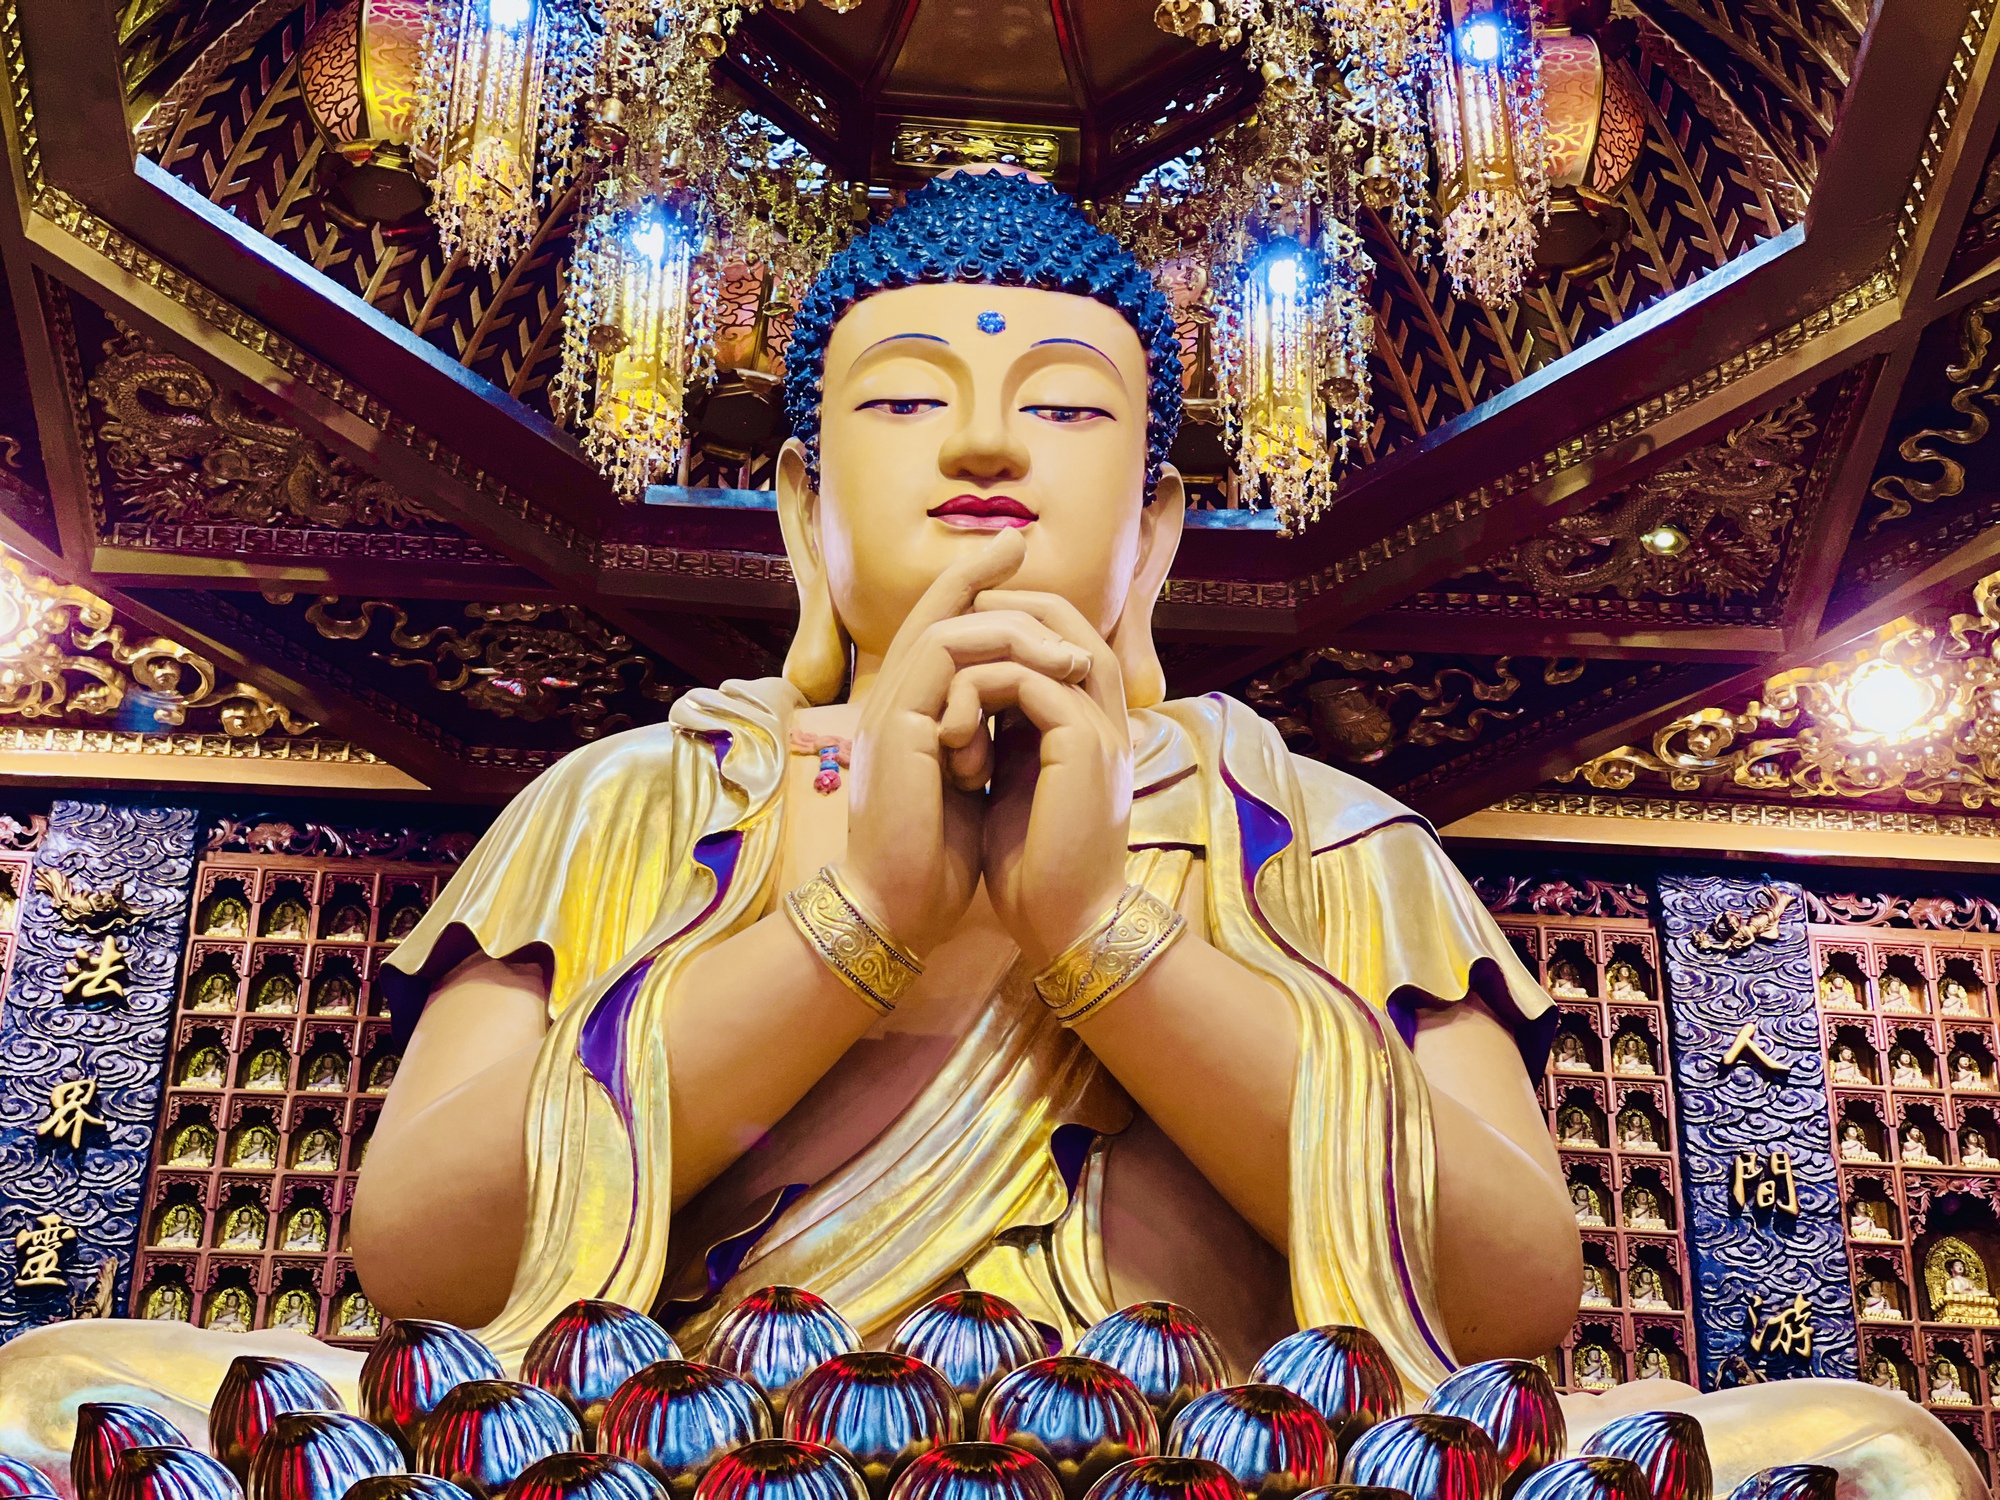 Máy xin xăm   Độc đáo MÁY XIN XĂM HIỆN ĐẠI ở chùa Vạn Phật  Quận 5 Sài  Gòn   Nếu có dịp ghé thăm chùa Vạn Phật bạn